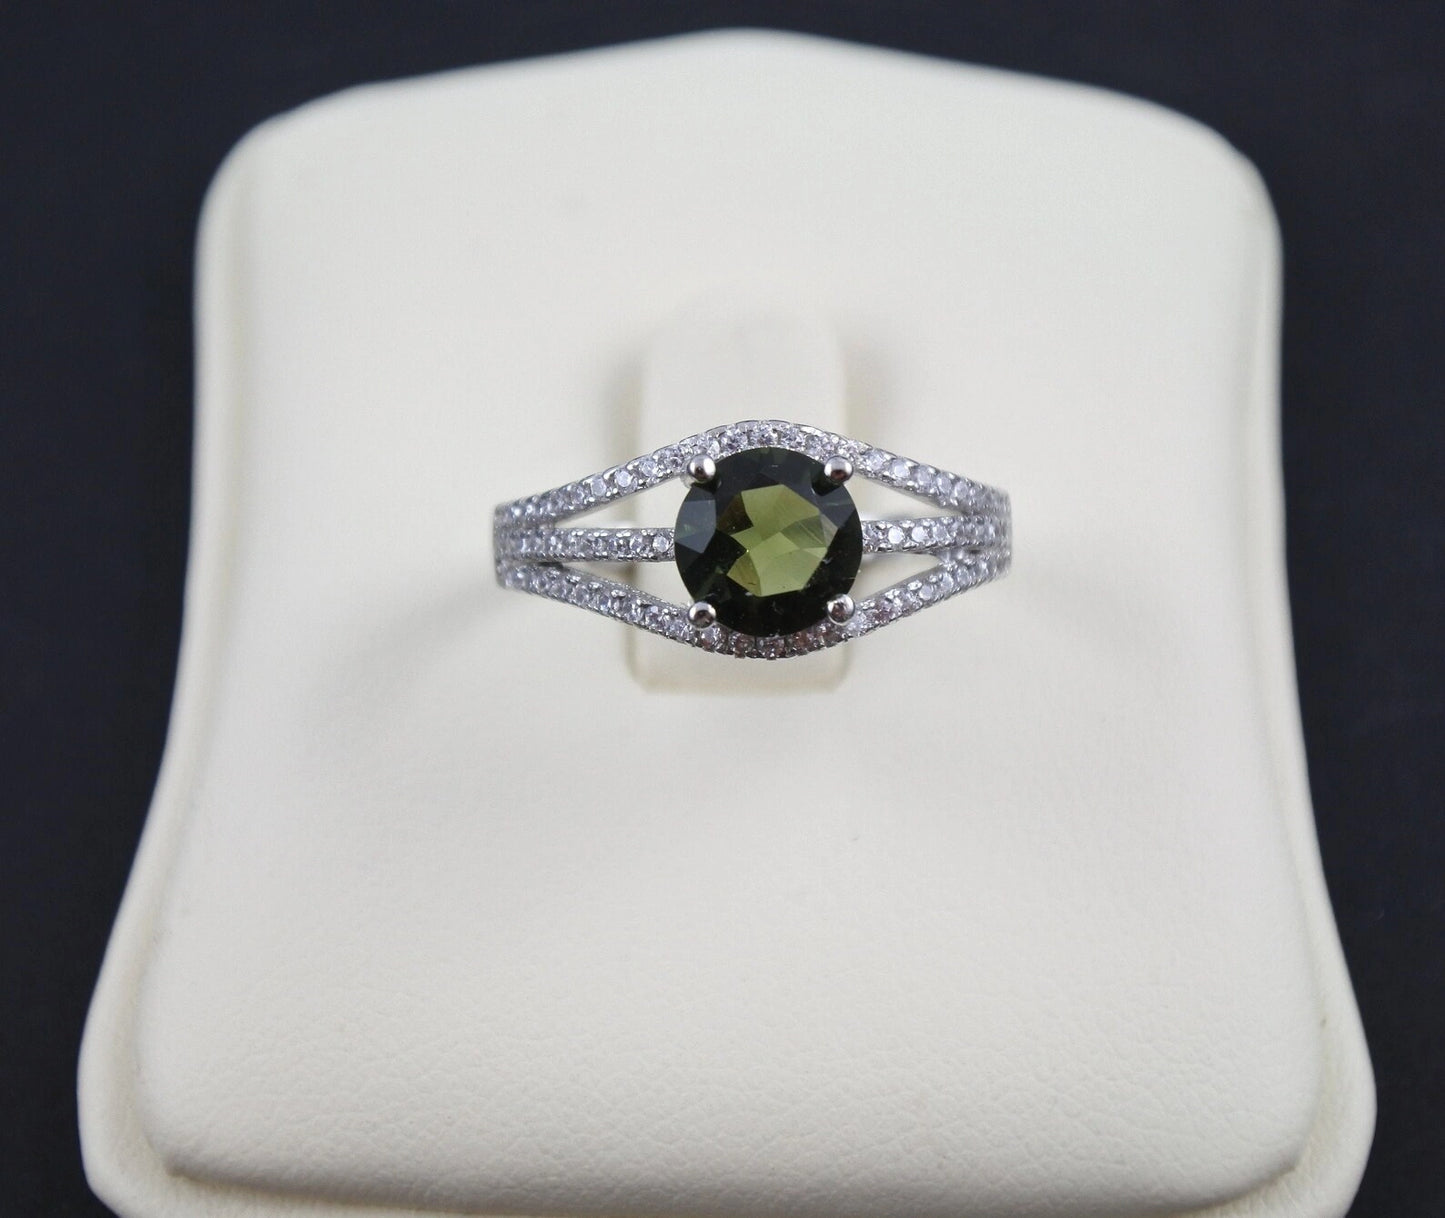 Genuine moldavite ring 7 mm stone, real Moldavite ring Silver, Czech moldavite ring with certificate Moldavite jewelry Moldavite wedding ring